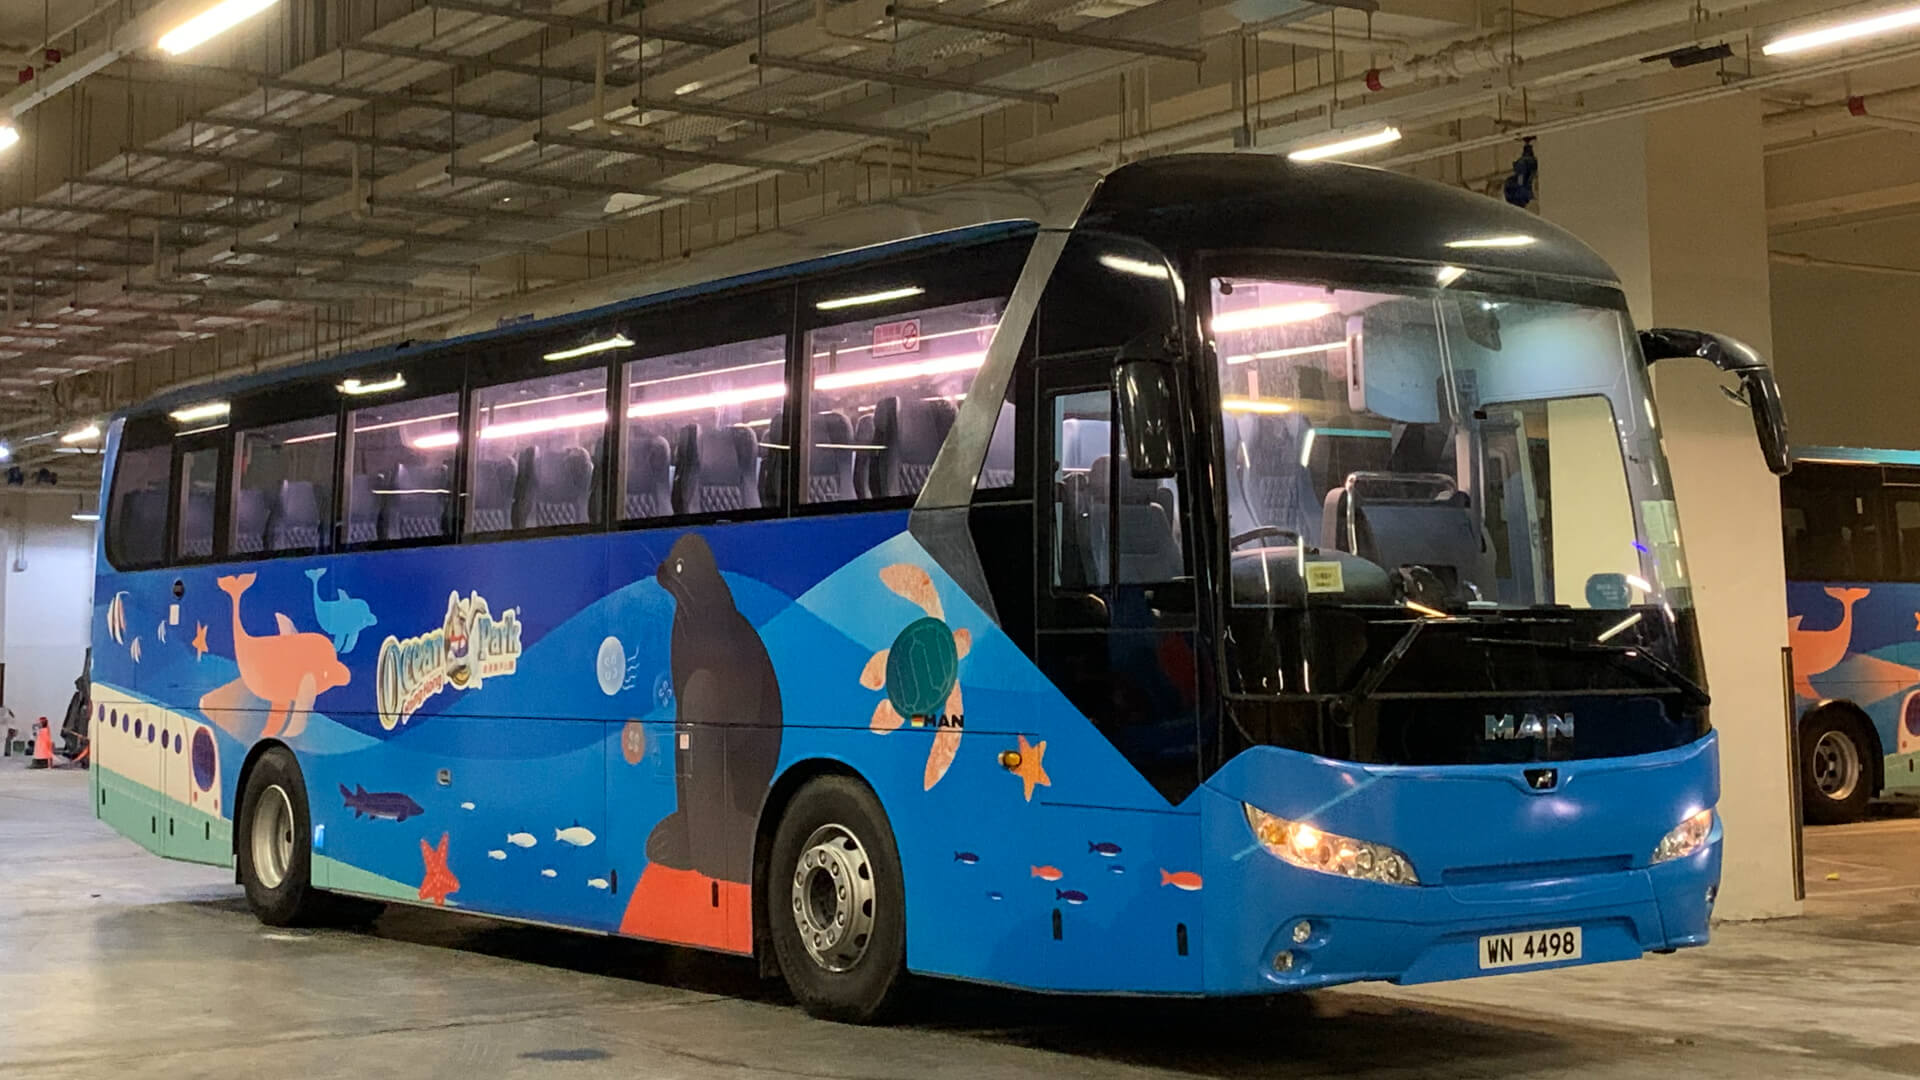 Ocean Park Water World Shuttle Bus